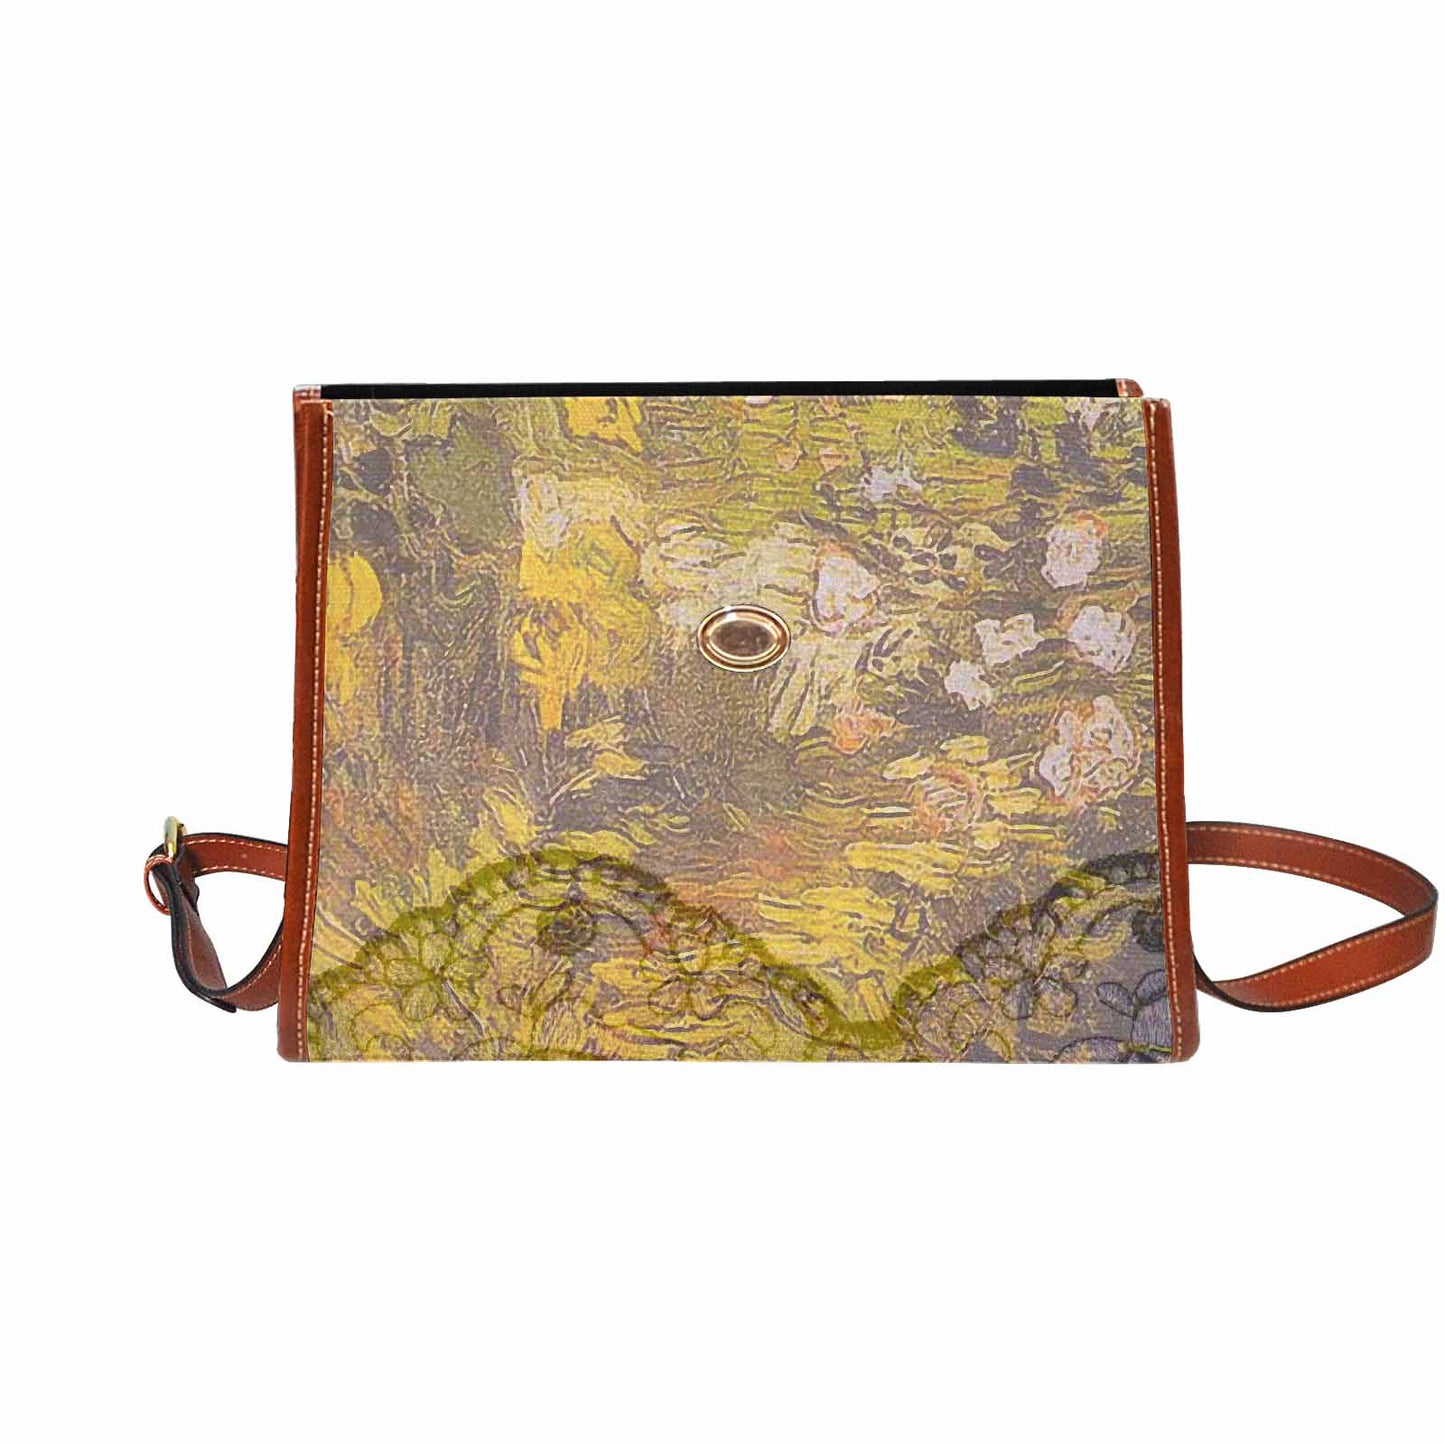 Vintage Floral Handbag, Design 05x Model 1695341 C20